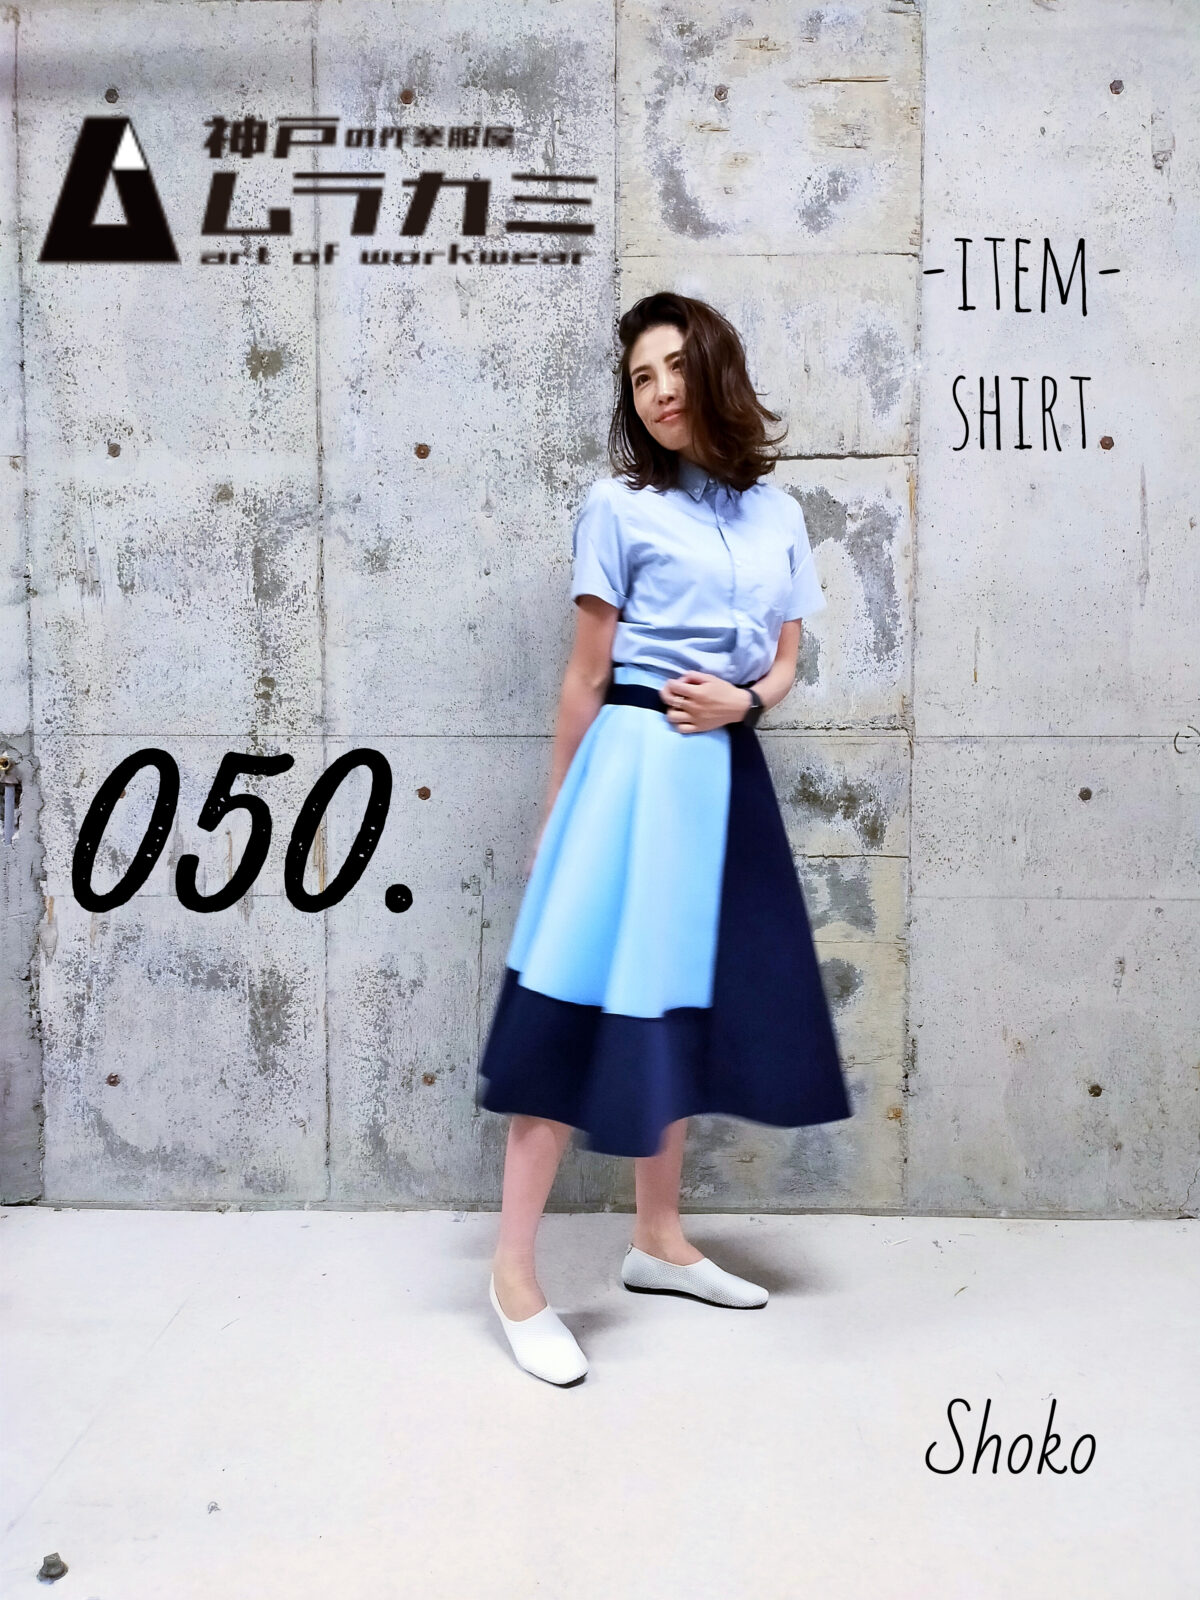 dimo（ディモ）さん特集　vol.13 ■art of workwear スタイリングナンバー050.